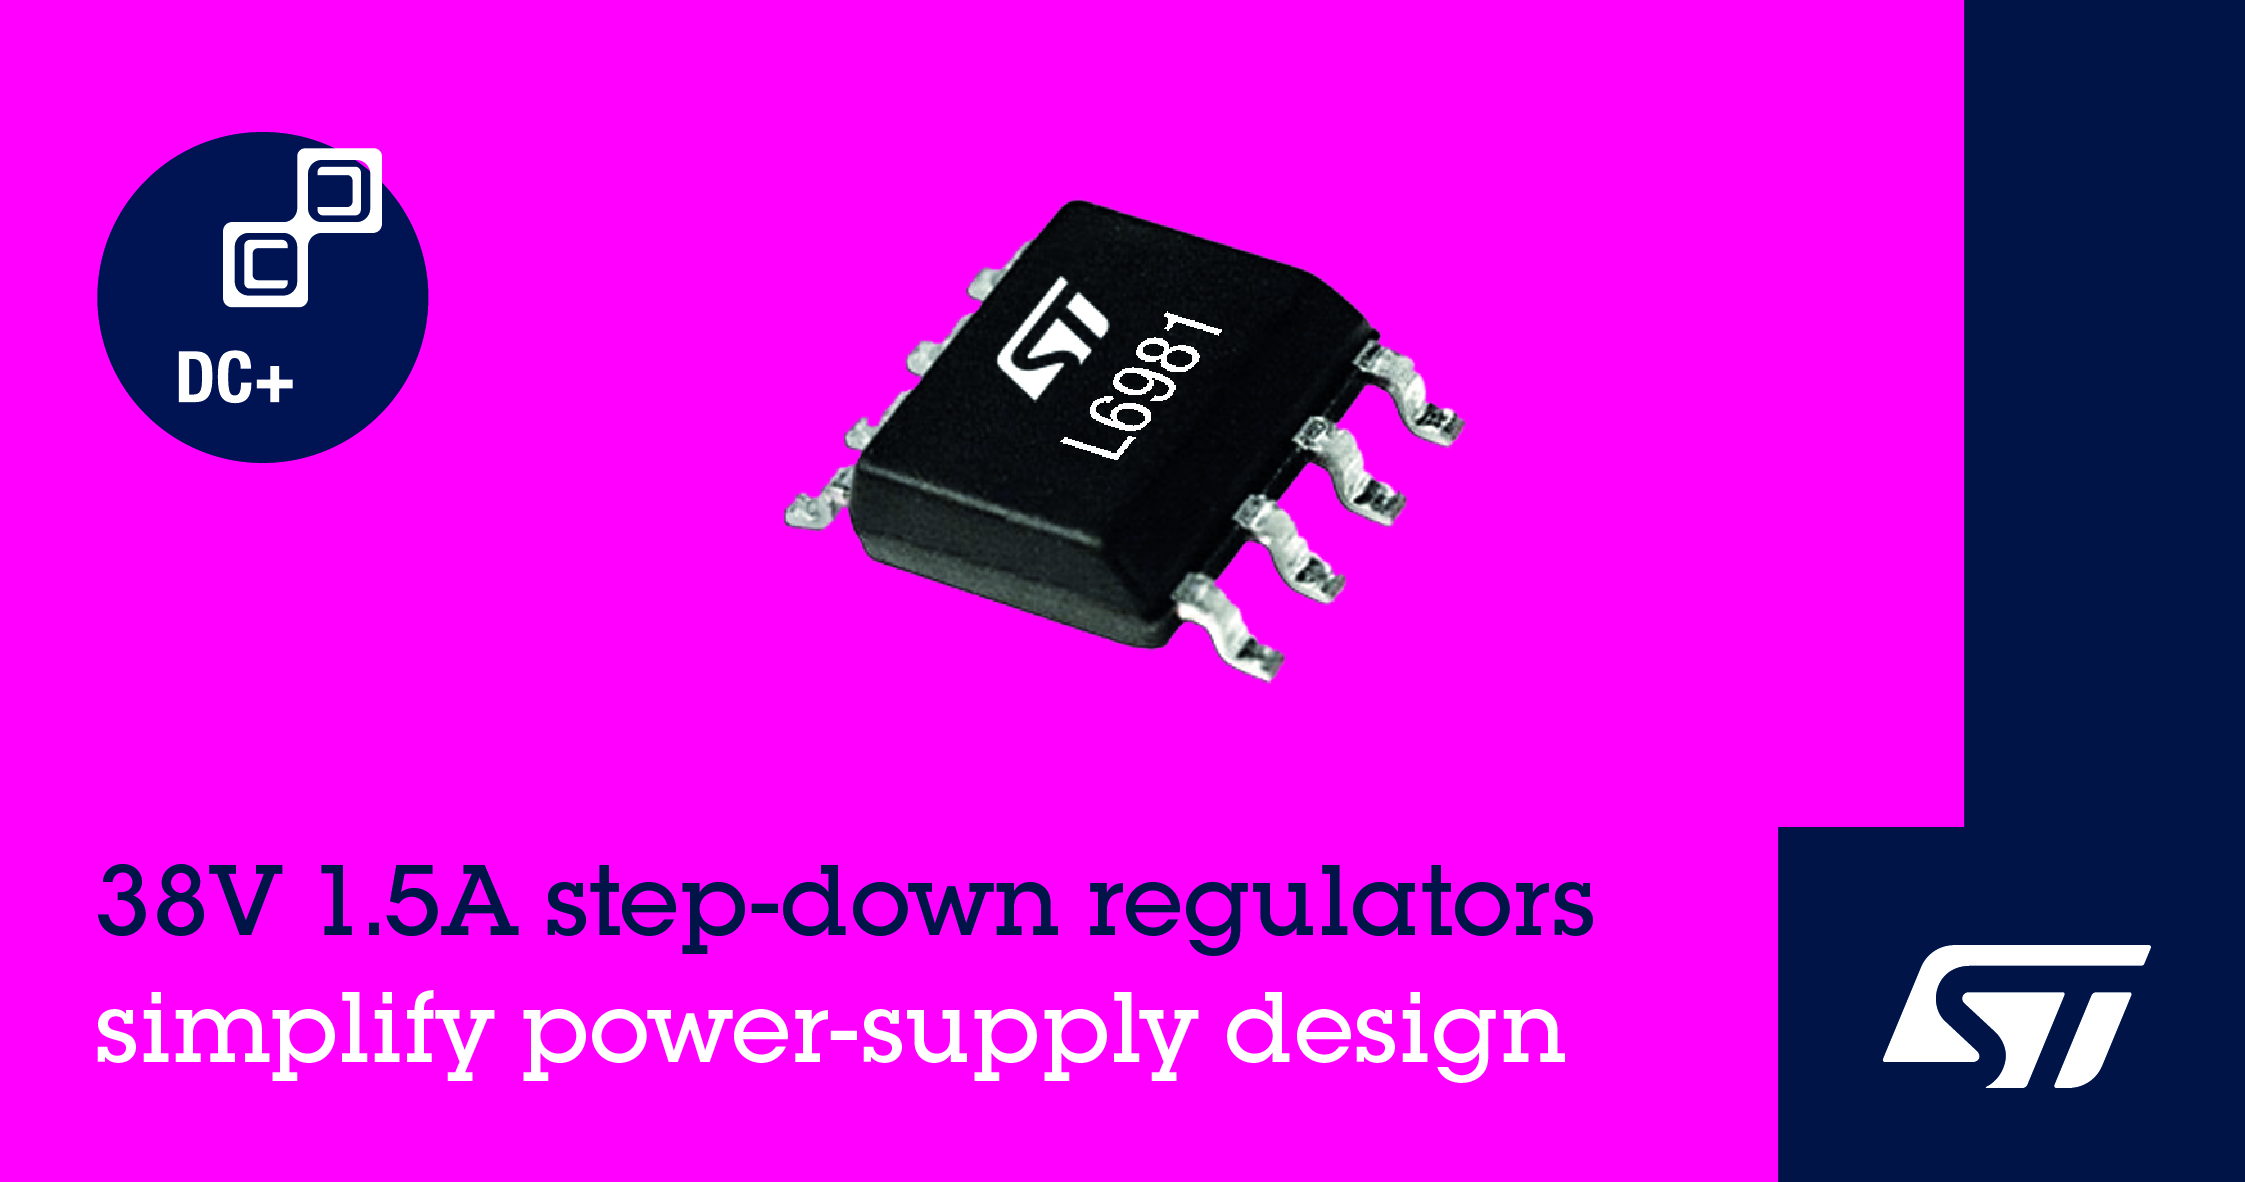 1.5A Synchronous Regulators Simplify Power Conversion